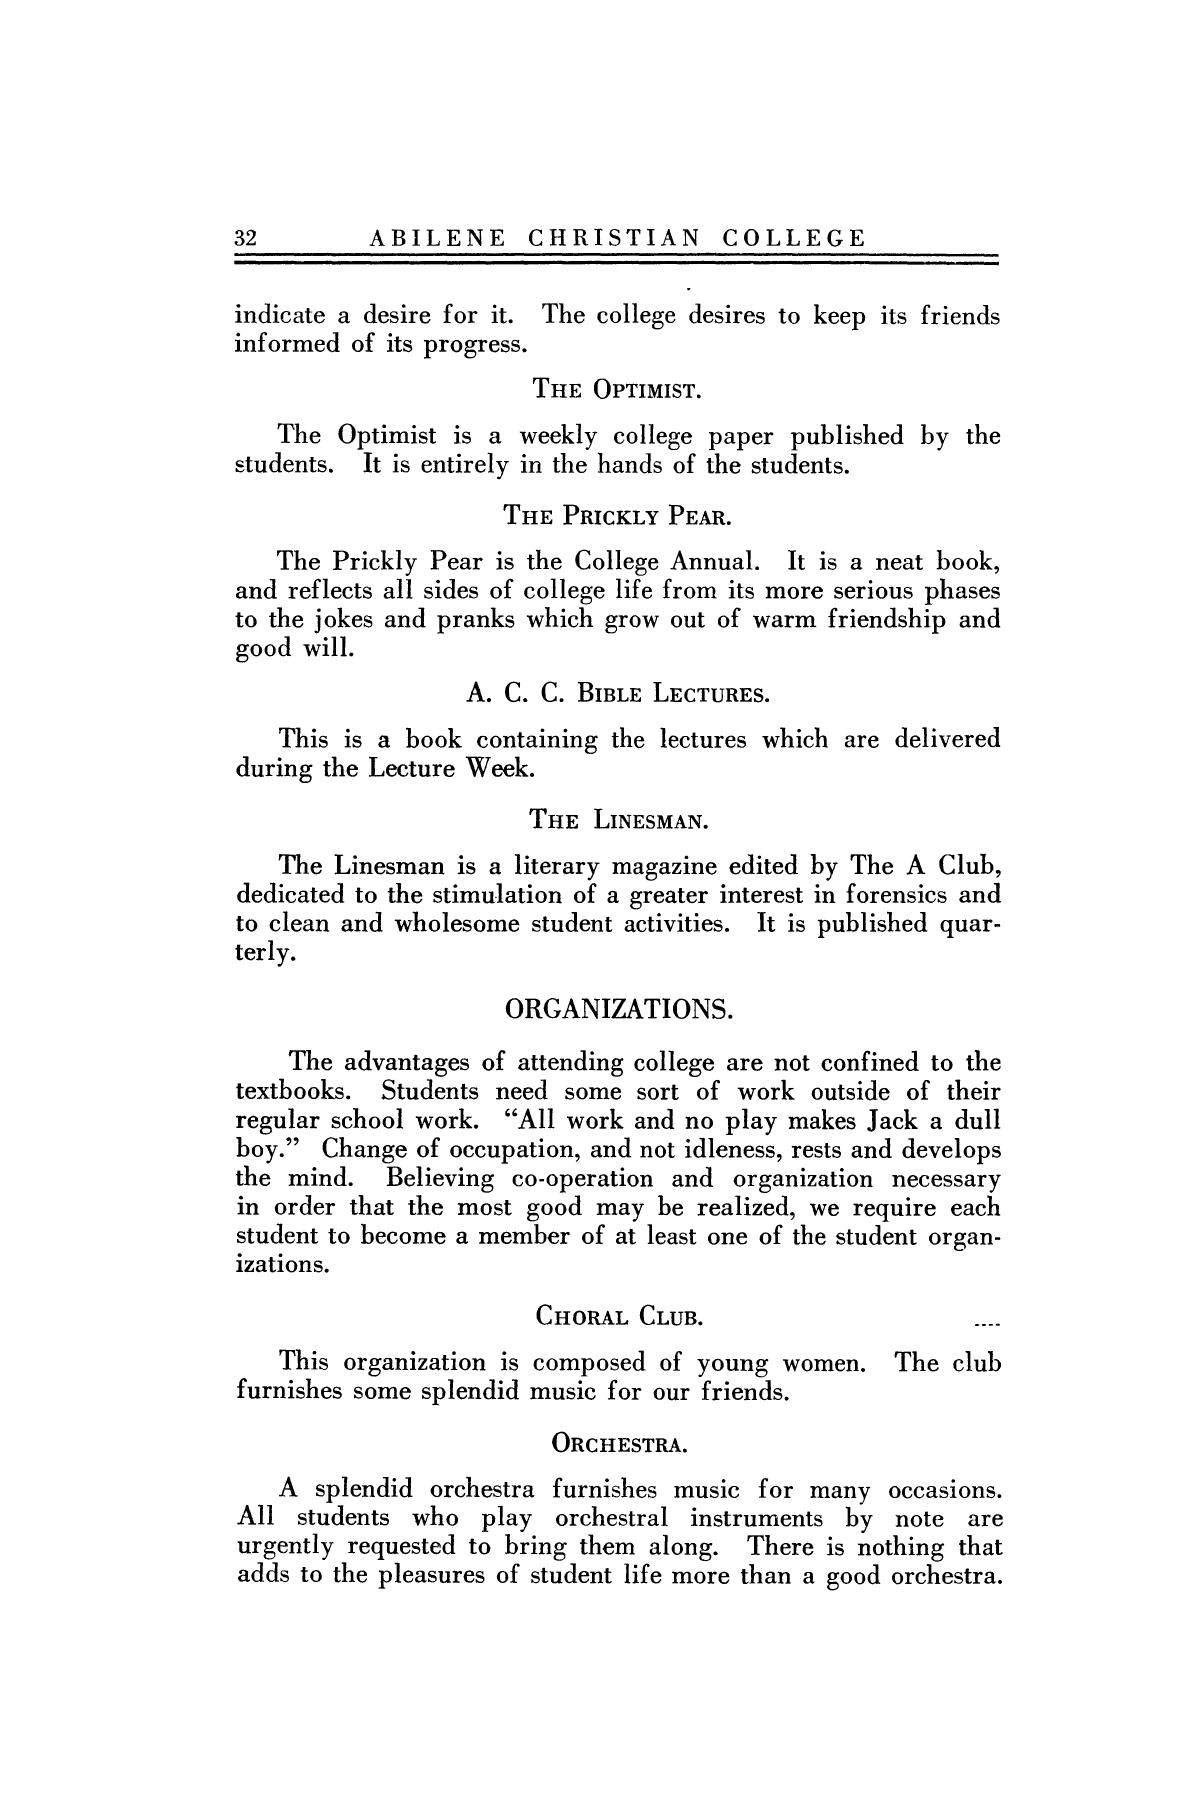 Catalog of Abilene Christian College, 1922-1923
                                                
                                                    32
                                                